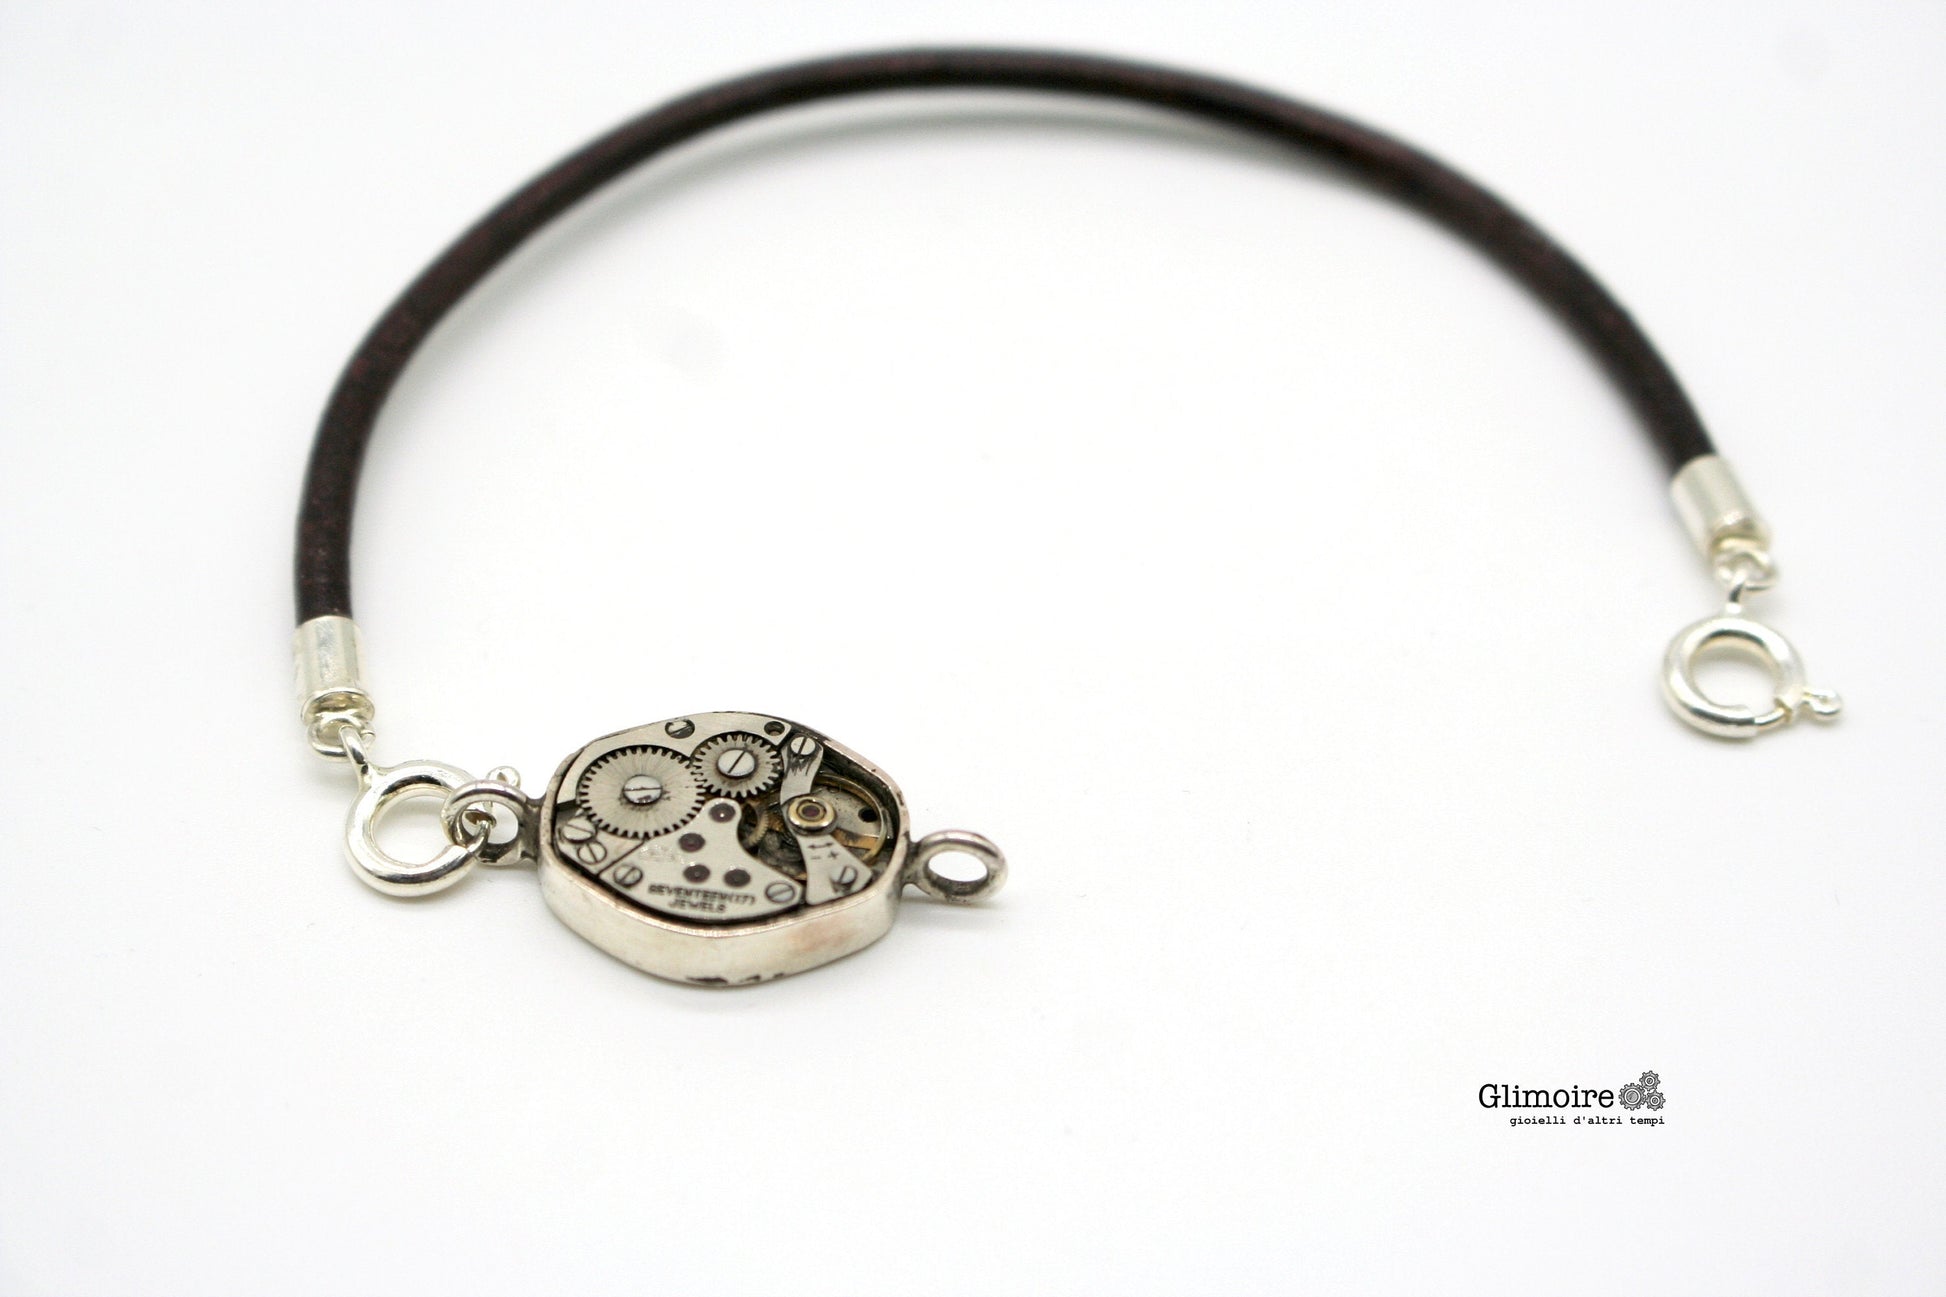 Bracciale con meccanismo di orologio, cuoio argento - Braccialetto maschile con orologio art.242 - Glimoire